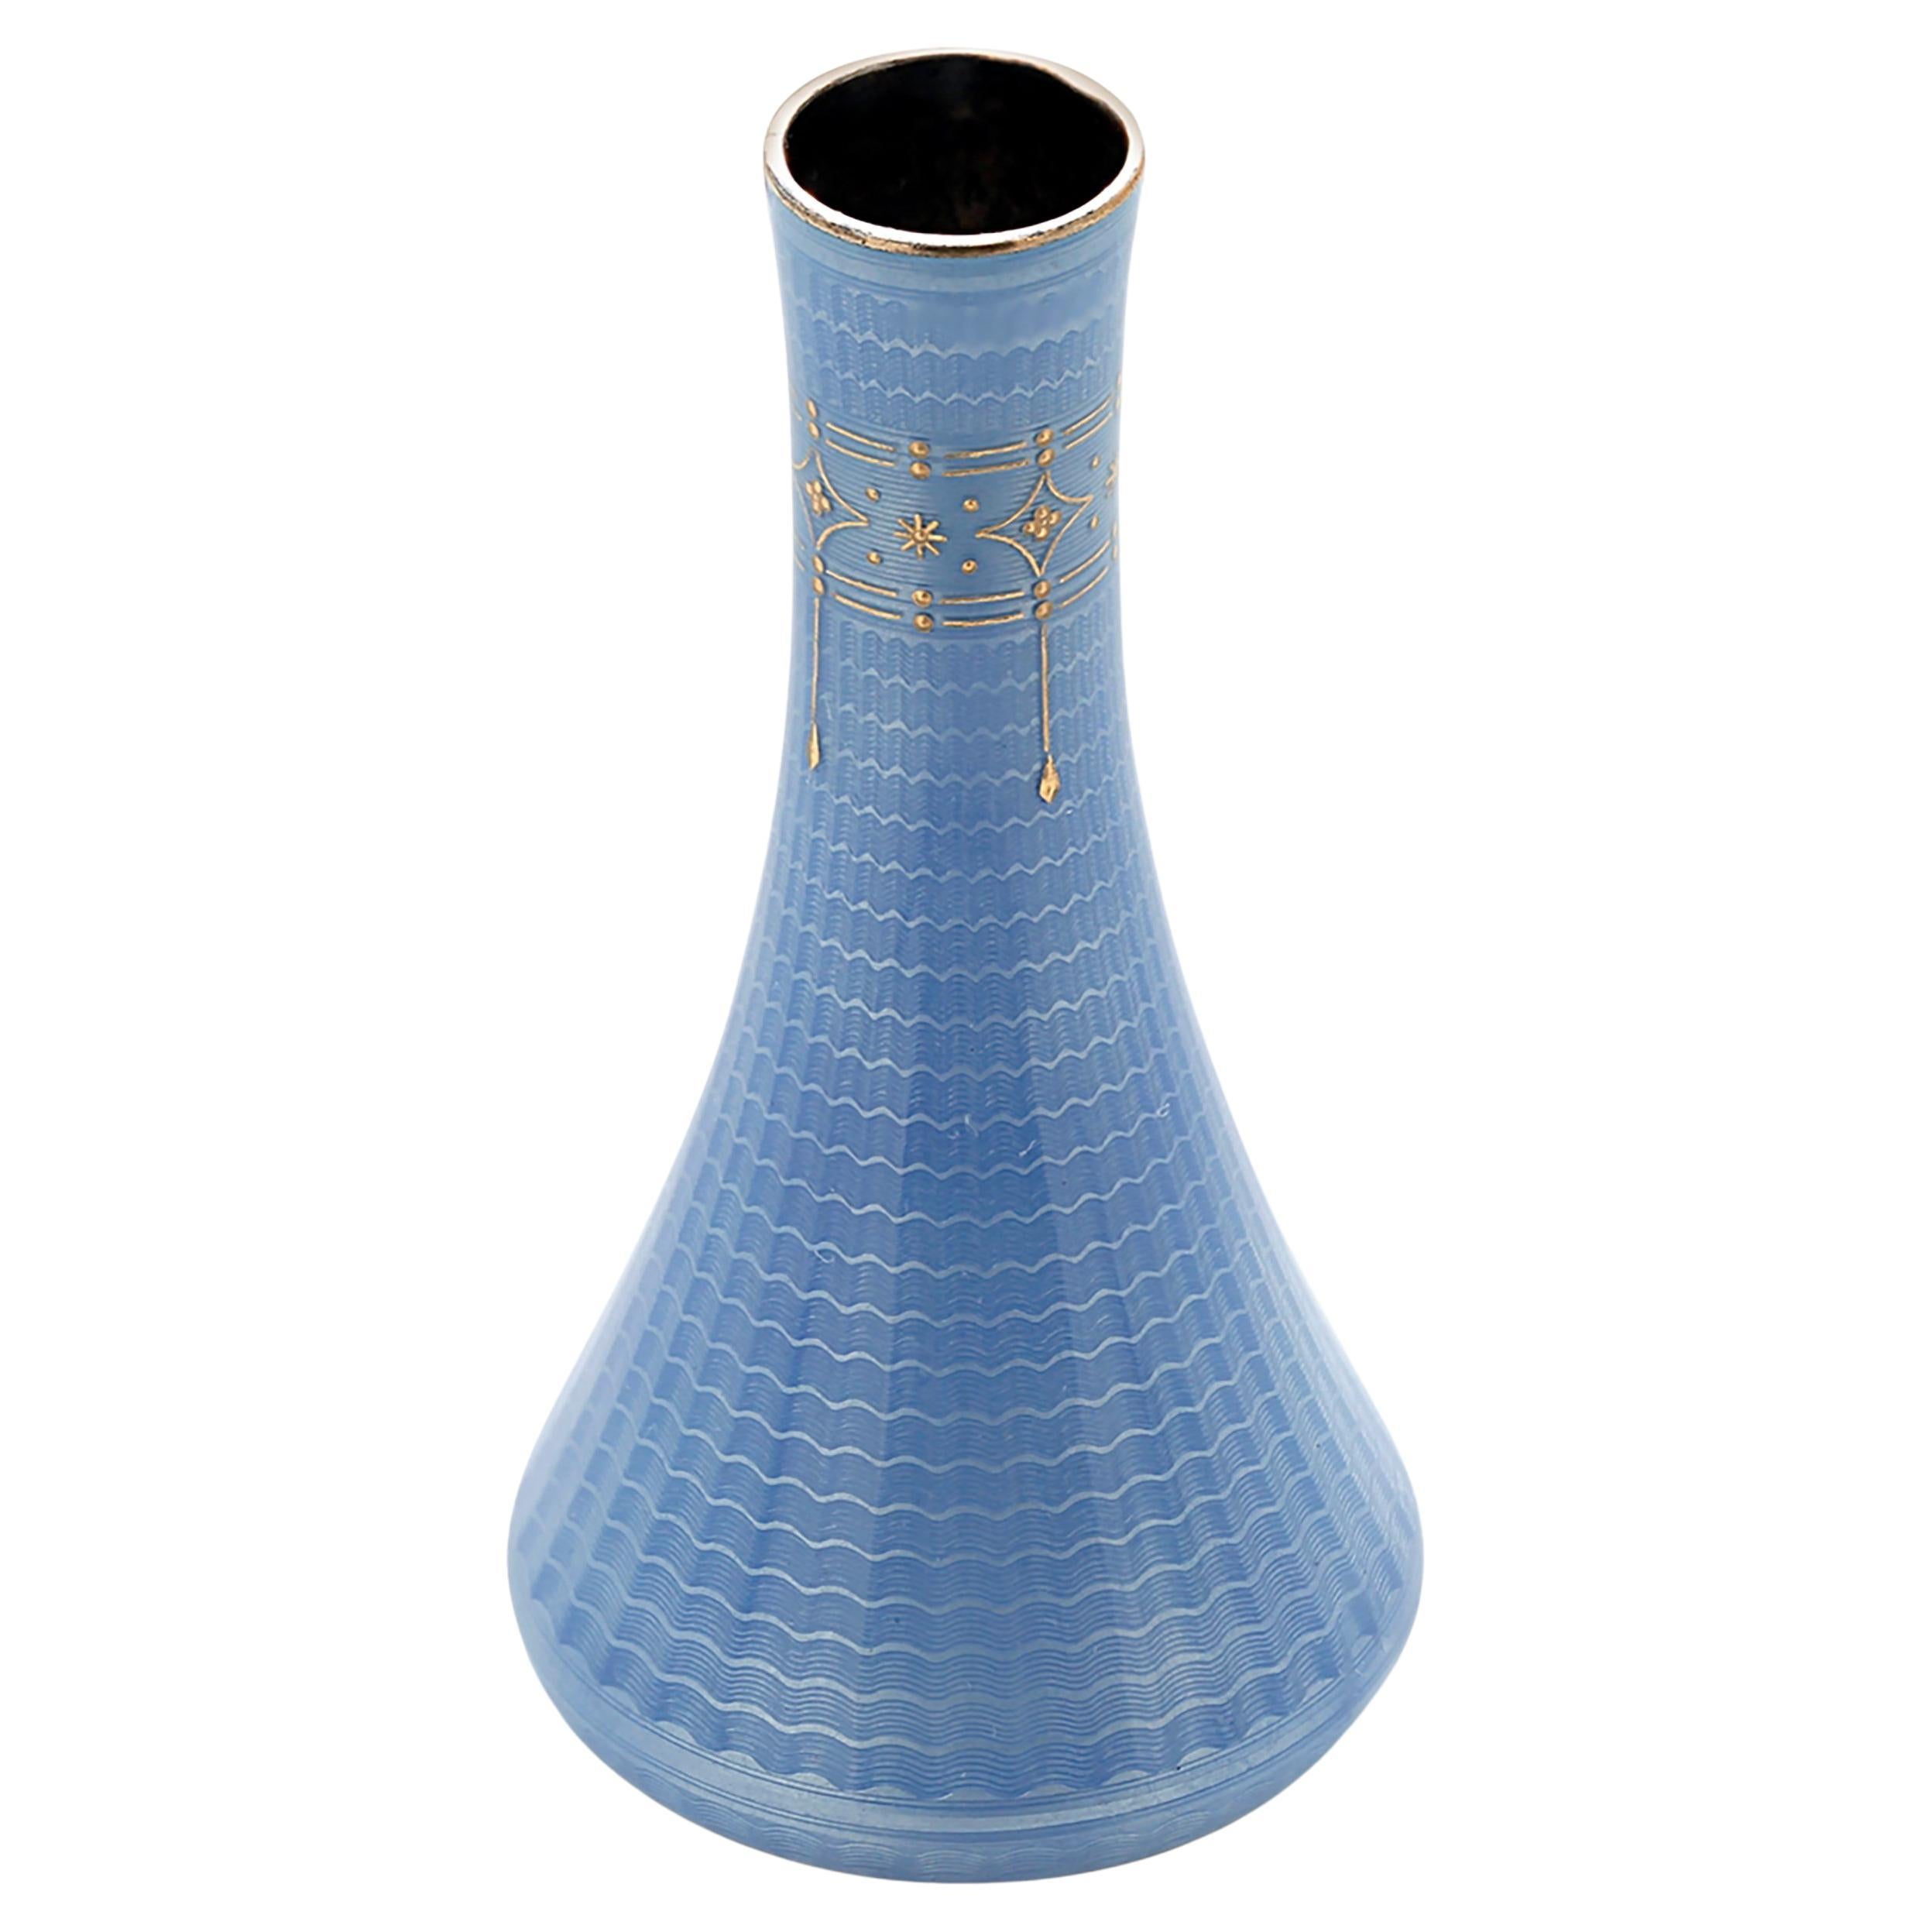 Vintage Guilloche Enameled Silver Bud Vase in Blue Translucent Enamel